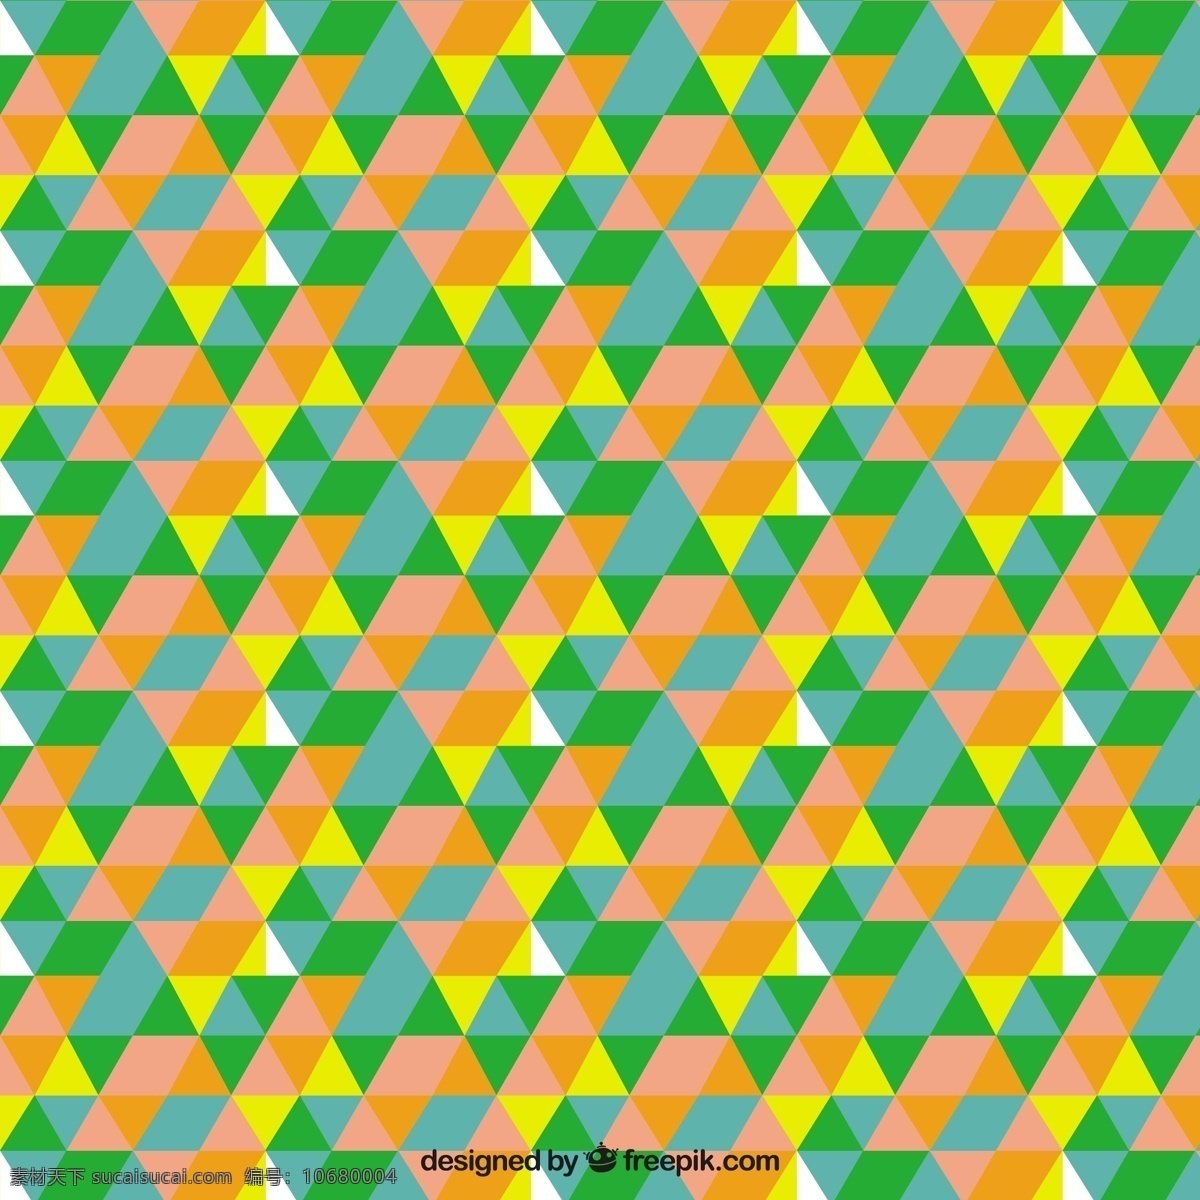 彩色 三角 镶嵌 图案 几何 丰富多彩 几何图案 无缝图案 三角形 无缝 三角形图案 着色 橙色